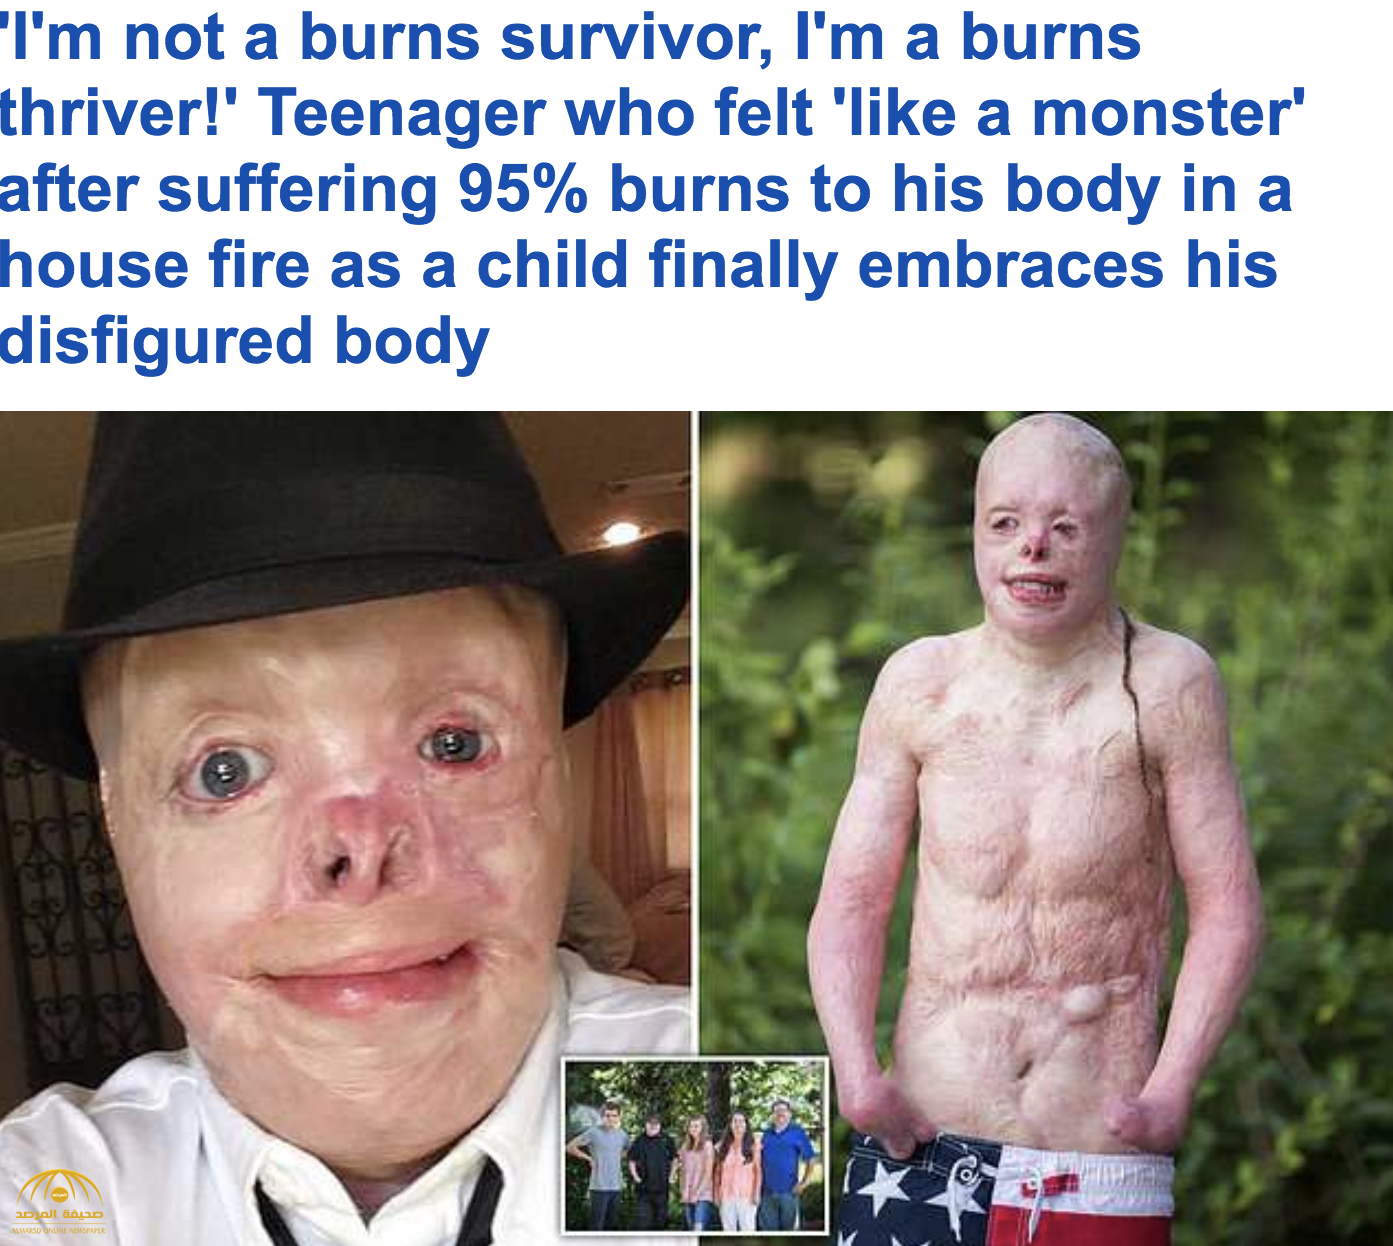 بالصور والفيديو : قصة شاب أمريكي احترق 95% من جسده